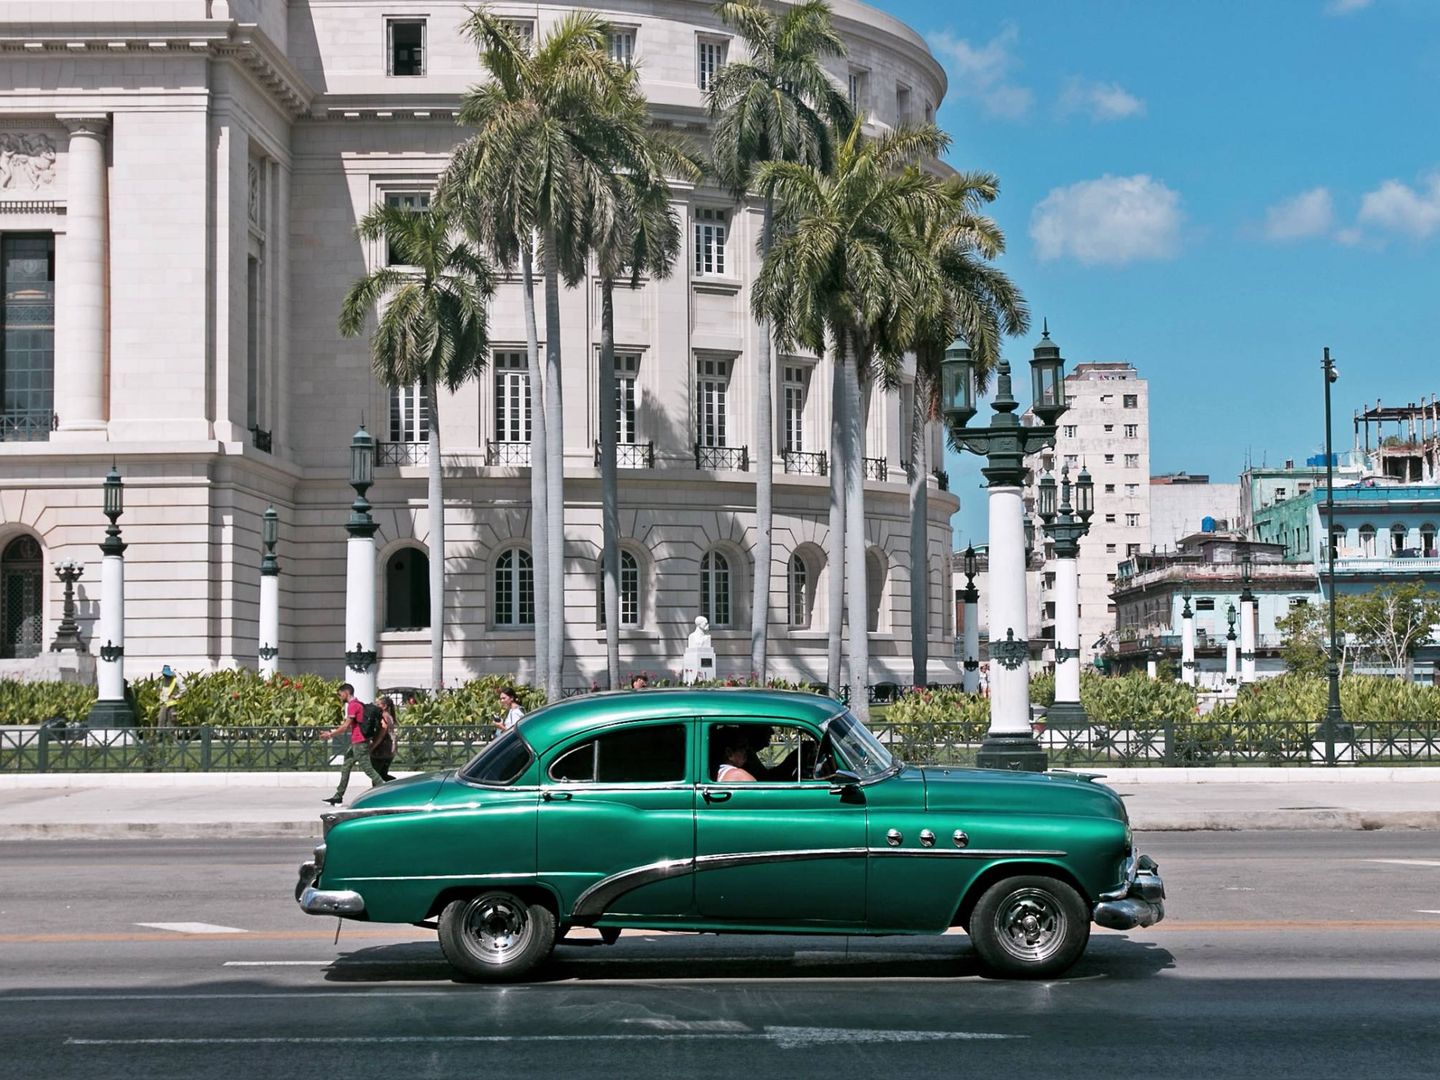 El estilo colonial tan propio de Cuba.  (Unsplash)